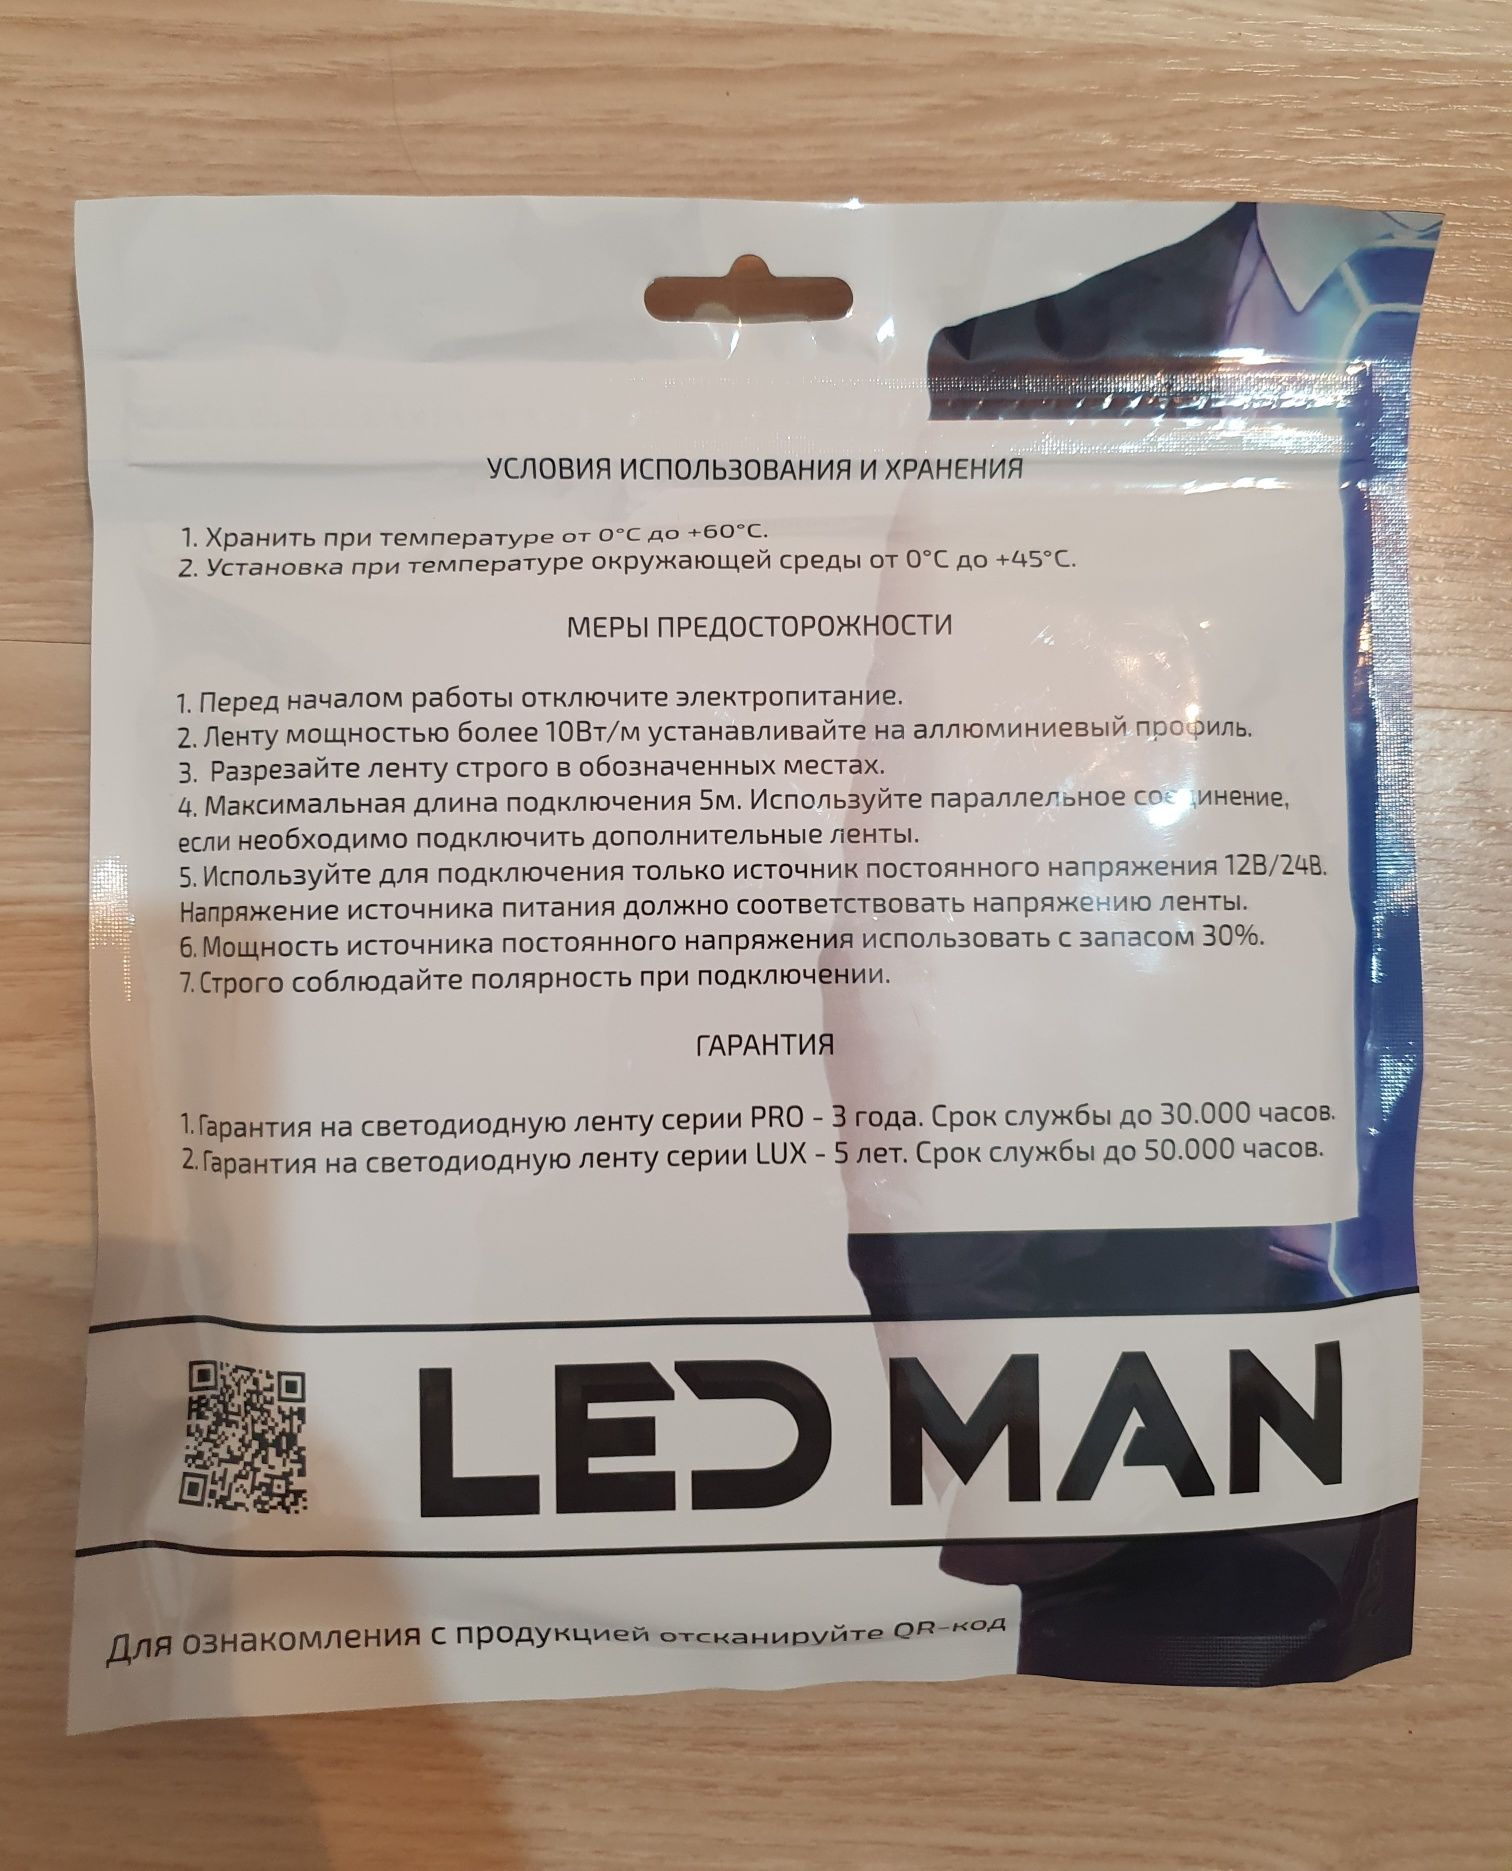 Продаётся светодиодная лента Led man.